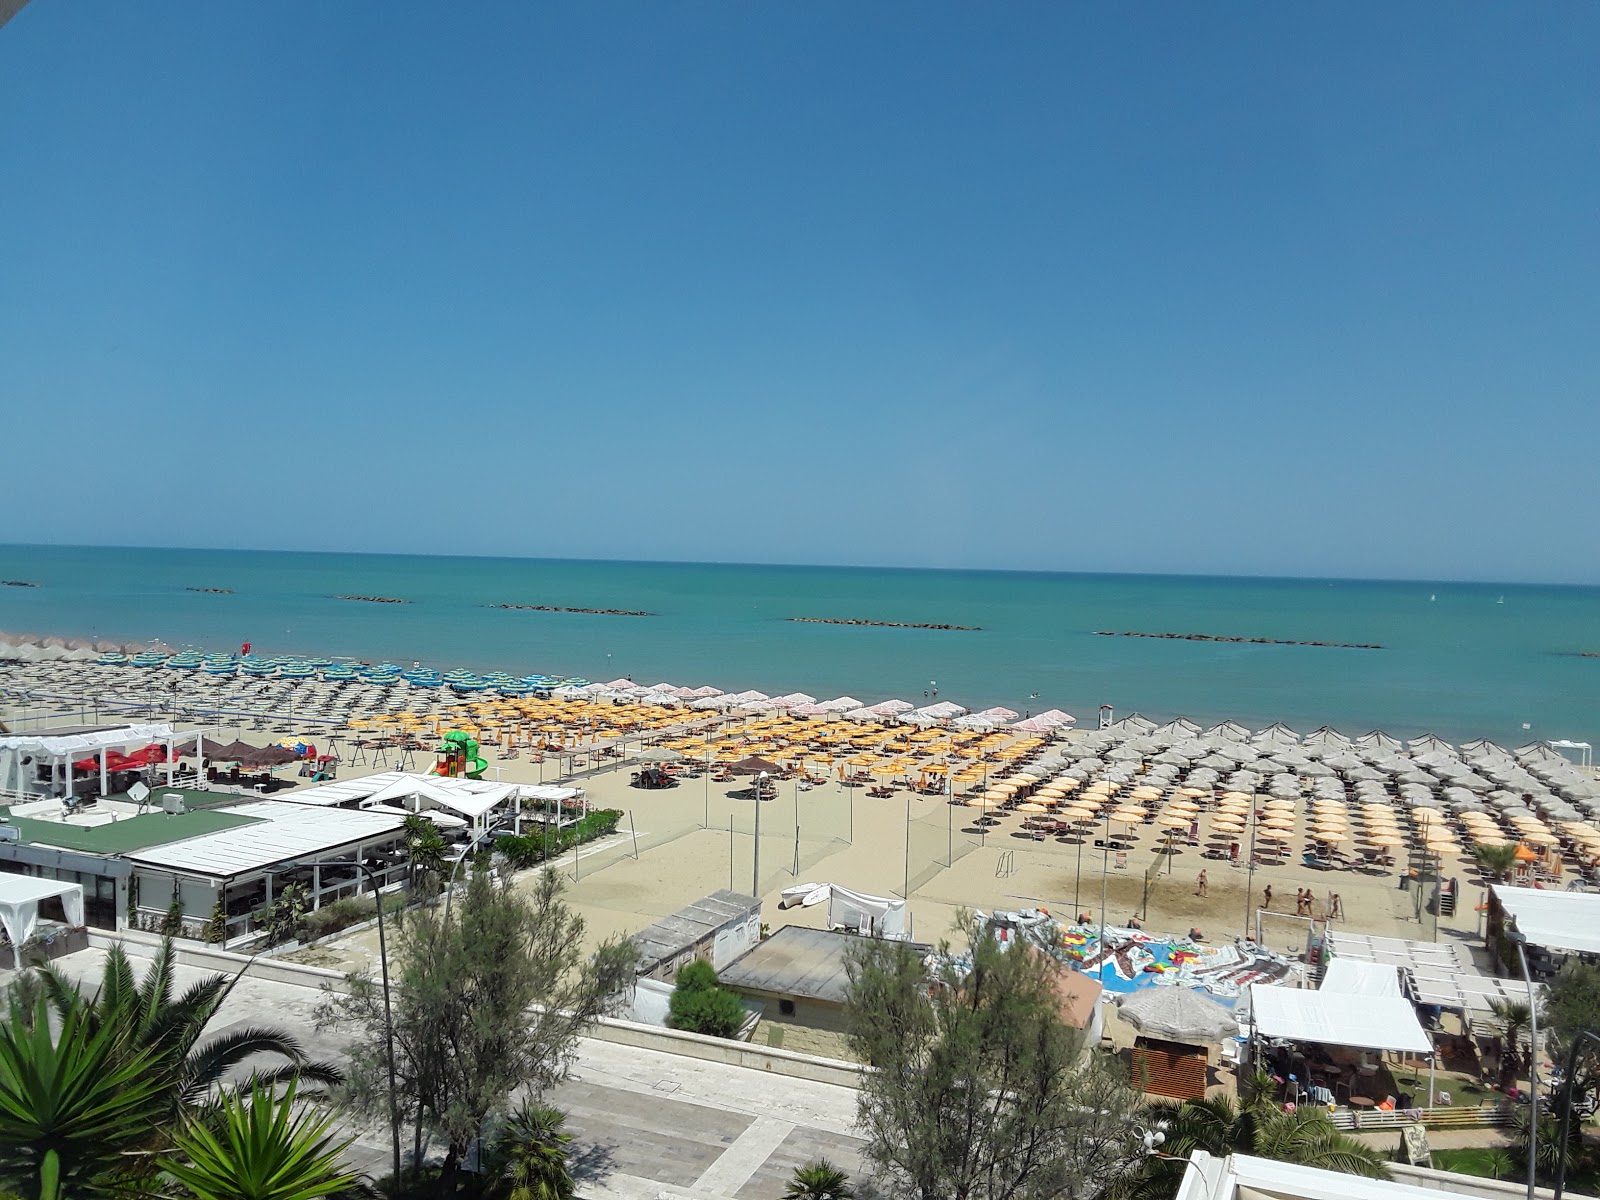 Photo of Spiaggia di Pescara with bright fine sand surface